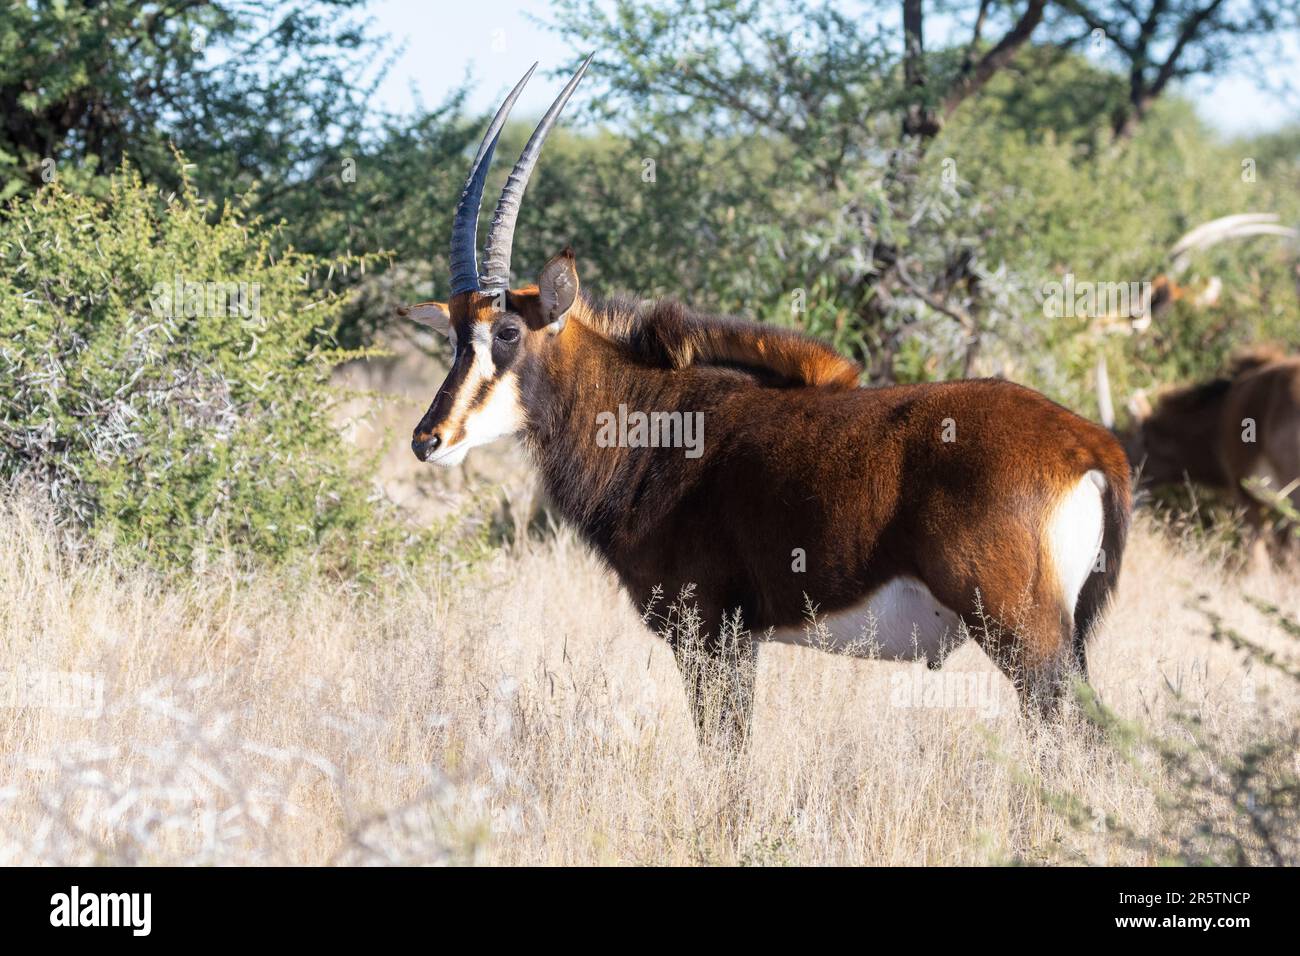 Antelope de sable (Hippotragus niger) dans la savane boisée, parc national de Mokala, Afrique du Sud Banque D'Images